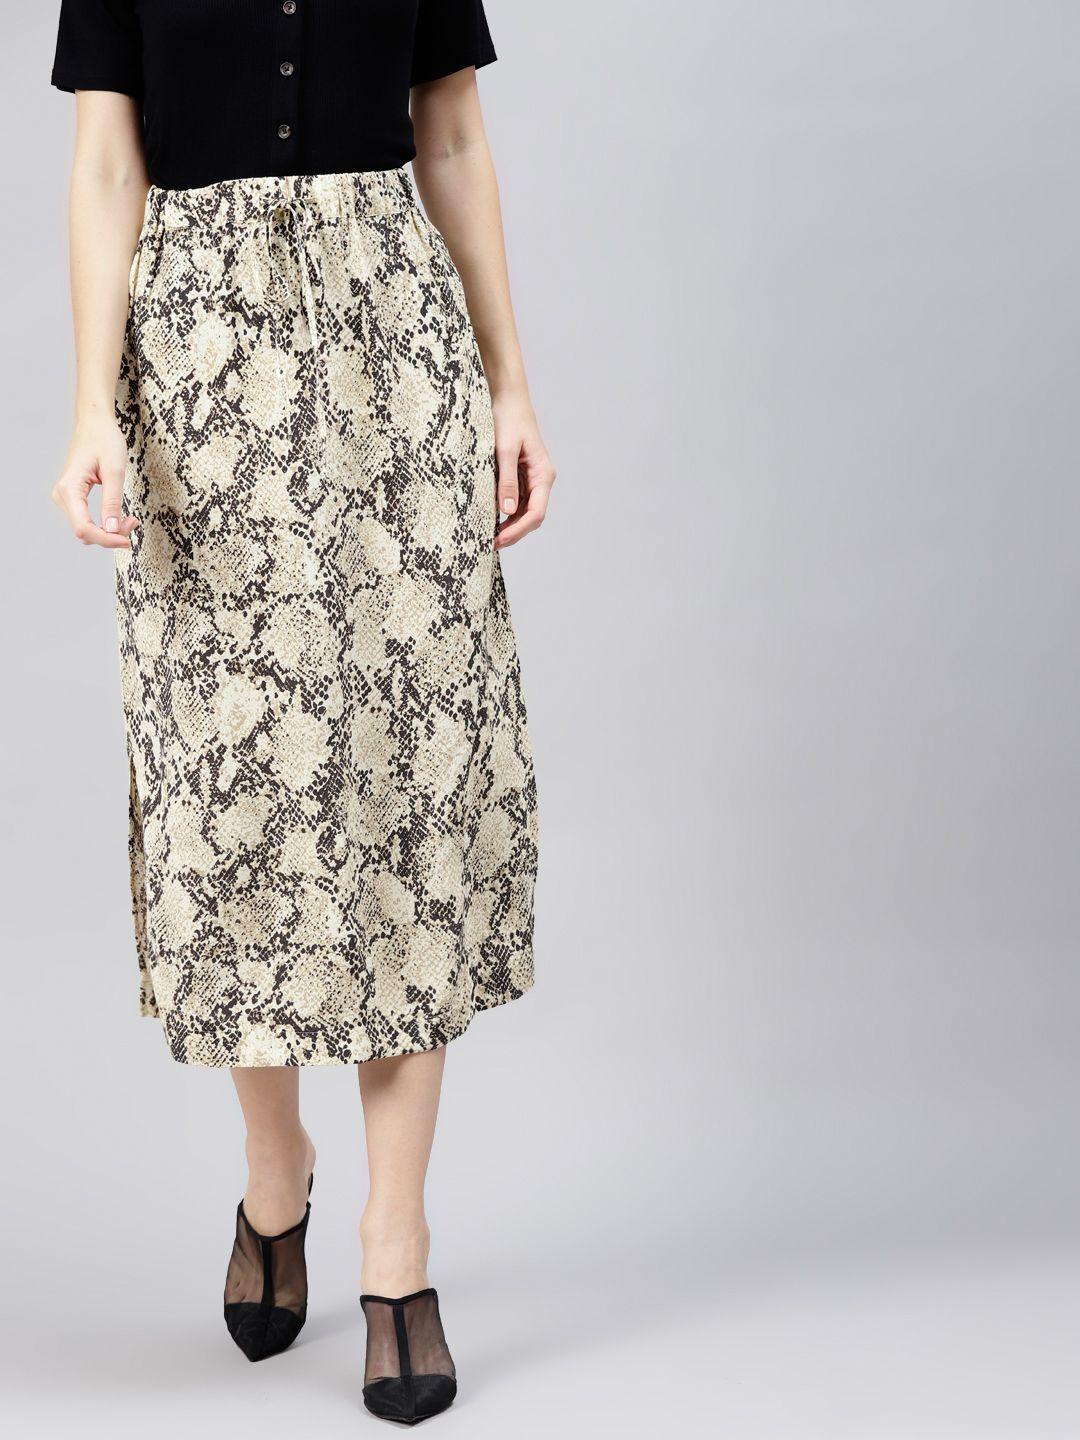 marks & spencer beige & black animal print skirt